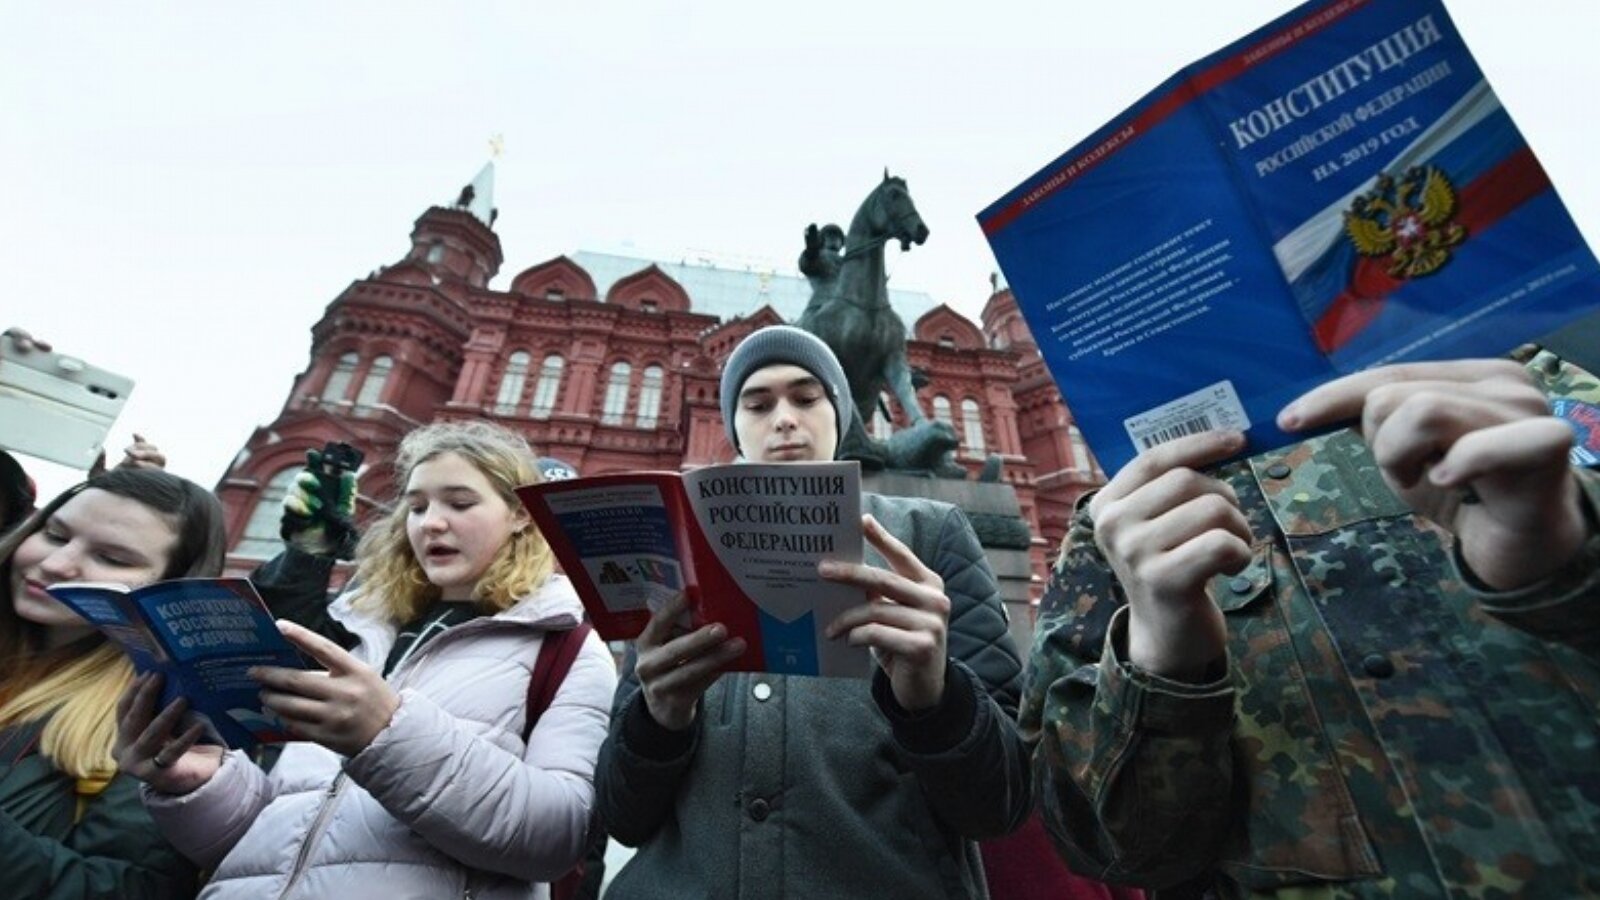 Мнение граждан рф. Человек читает Конституцию. Молодежь голосует. Люди голосуют. Человек и Конституция РФ.